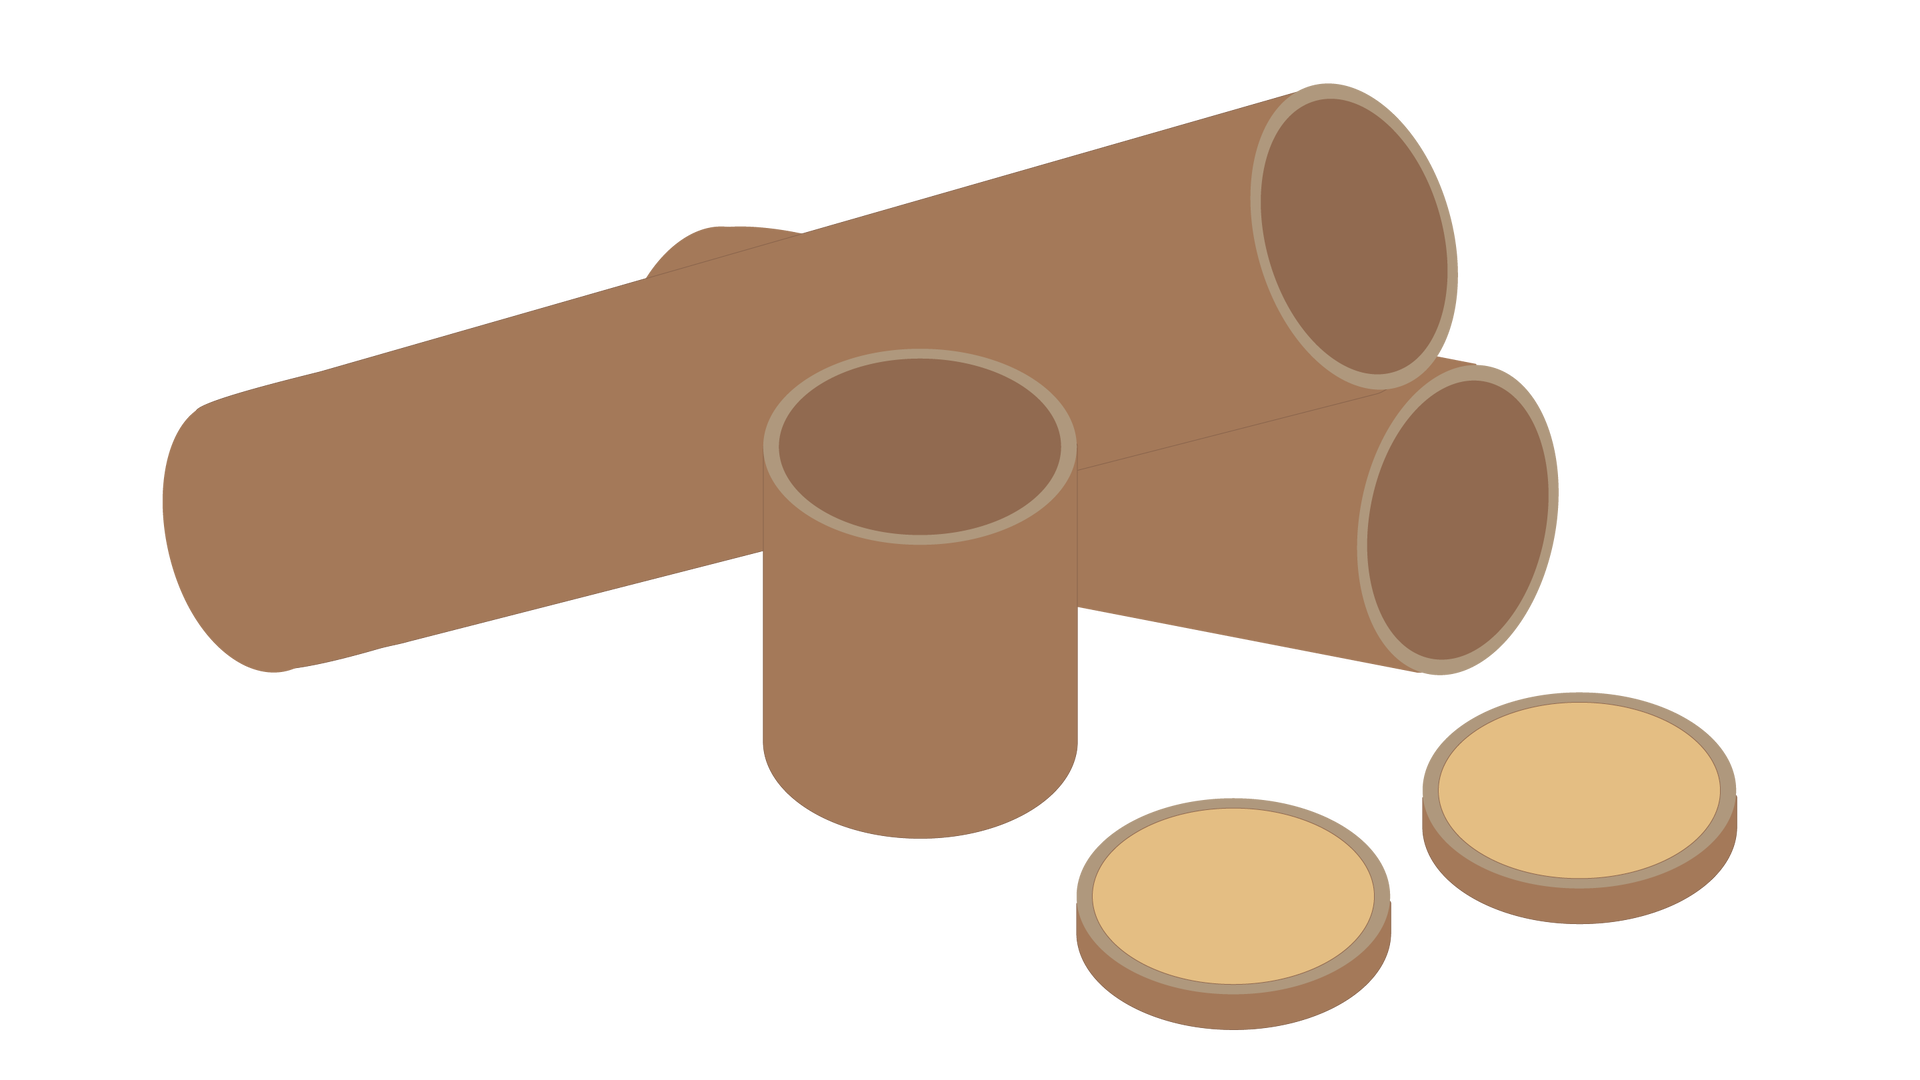 Rysunek przedstawia przykład przesyłki niestandardowej w formie trzech brązowych tub i dwóch płaskich, okrągłych elementów. 